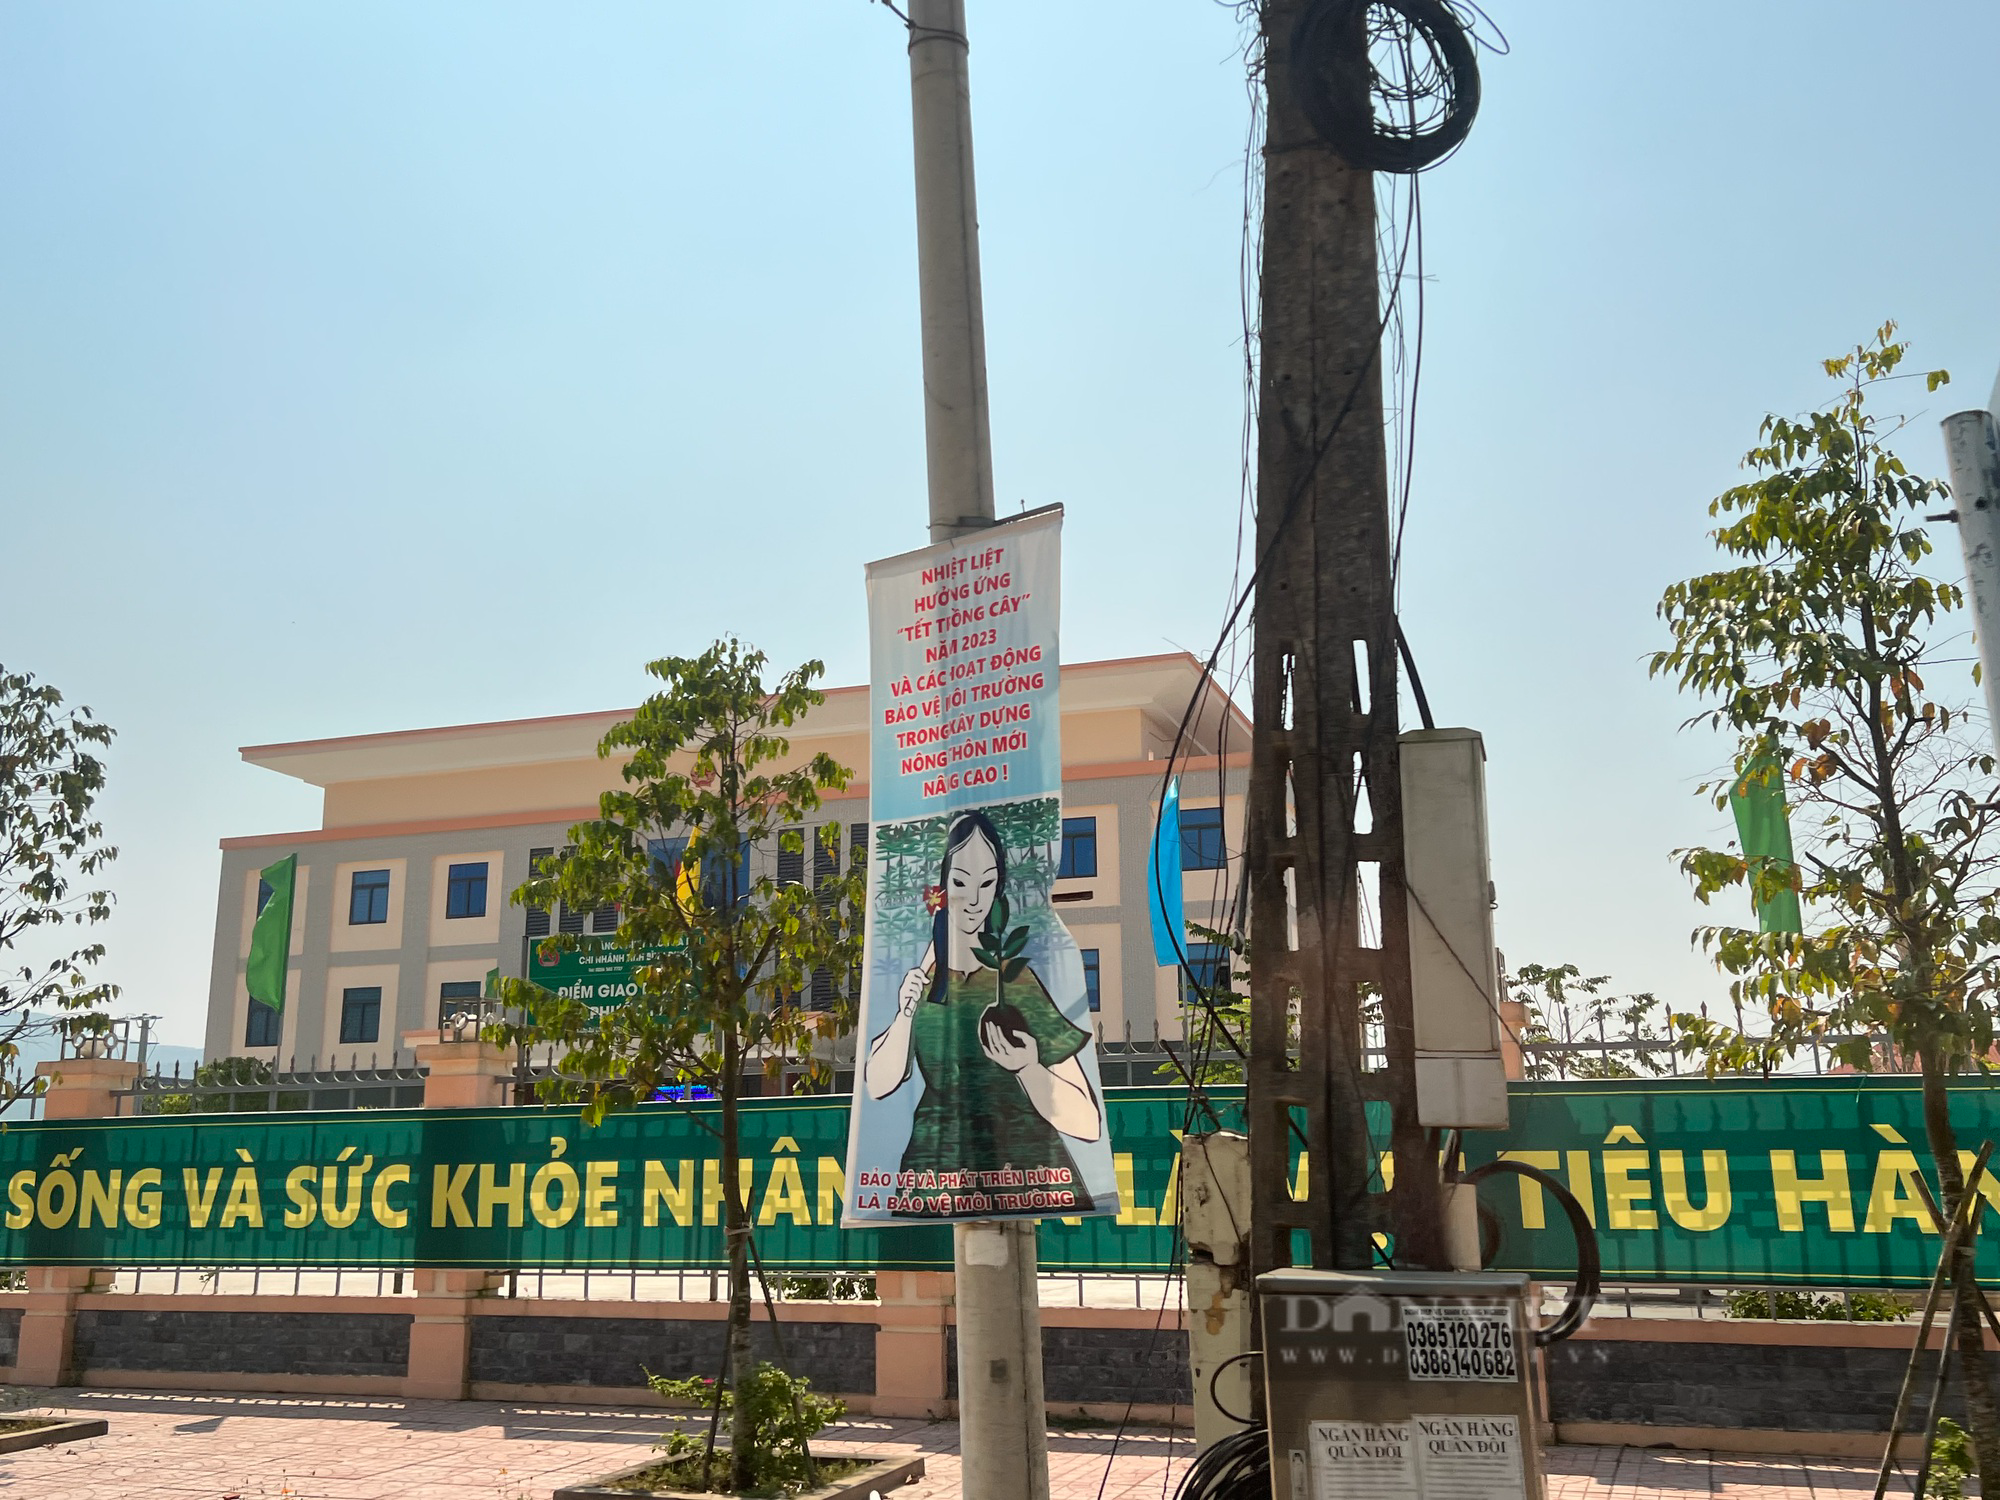 Chủ tịch xã ở Bình Định làm đơn xin thôi chức vì lý do sức khoẻ - Ảnh 2.